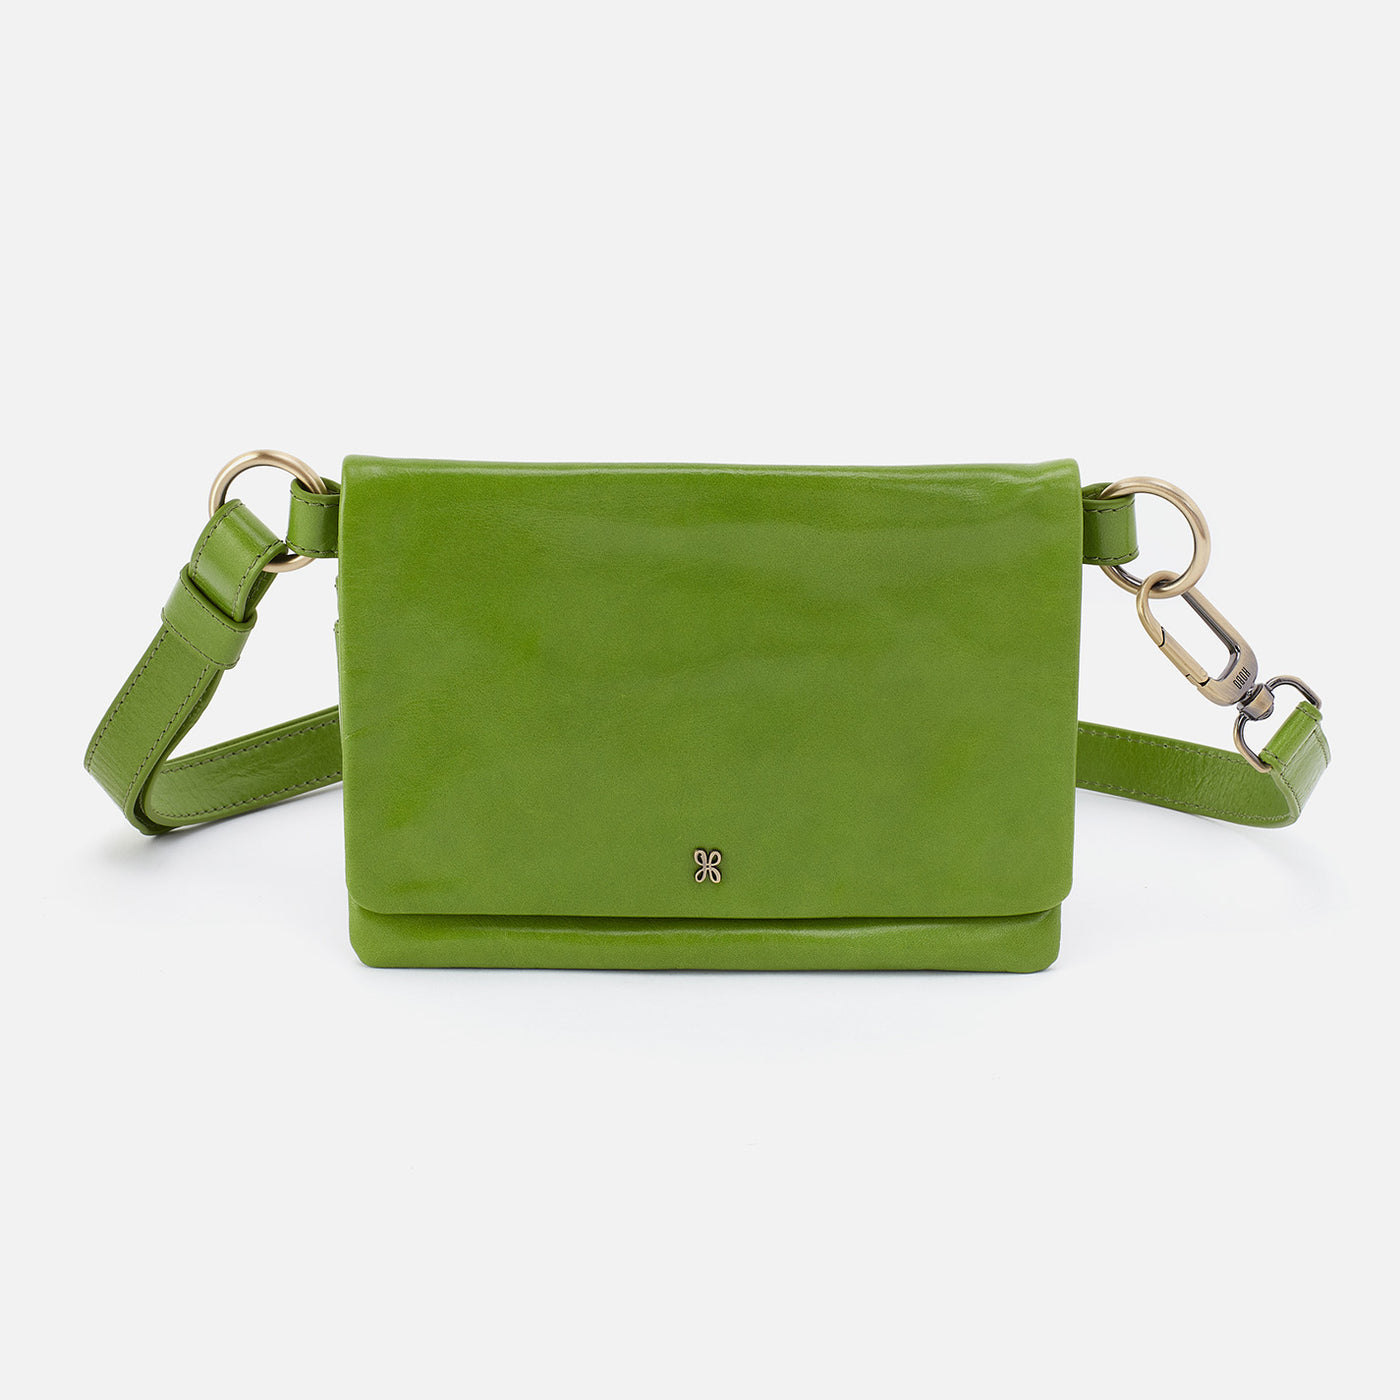 Winn Belt Bag in Polished Leather - Garden Green